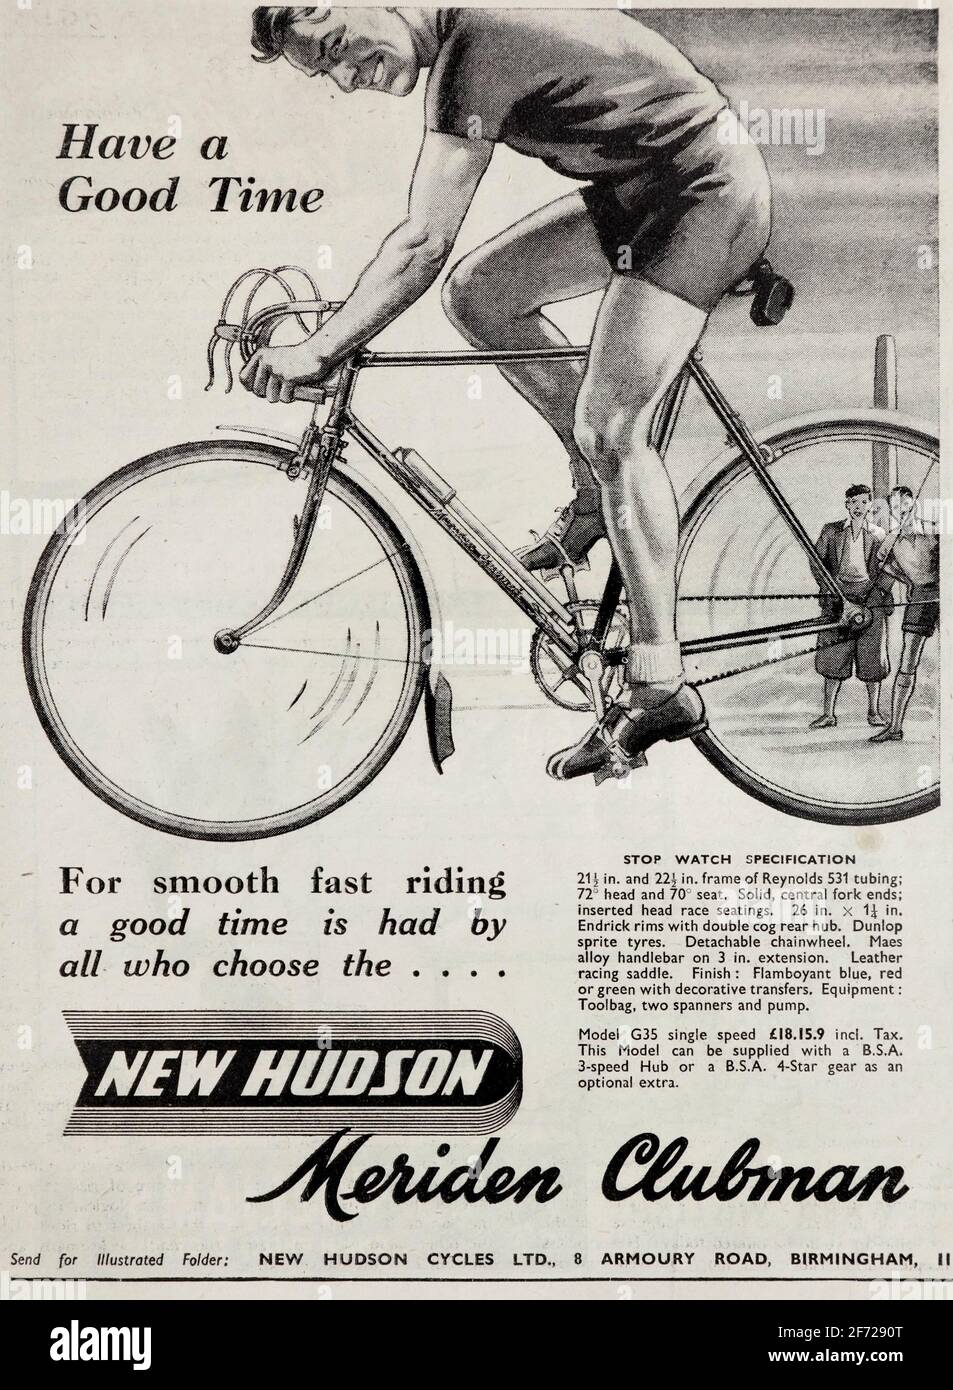 Publicité vintage 1953 pour British New Hudson Bicycles, avec leur modèle Meriden Clubman. Banque D'Images